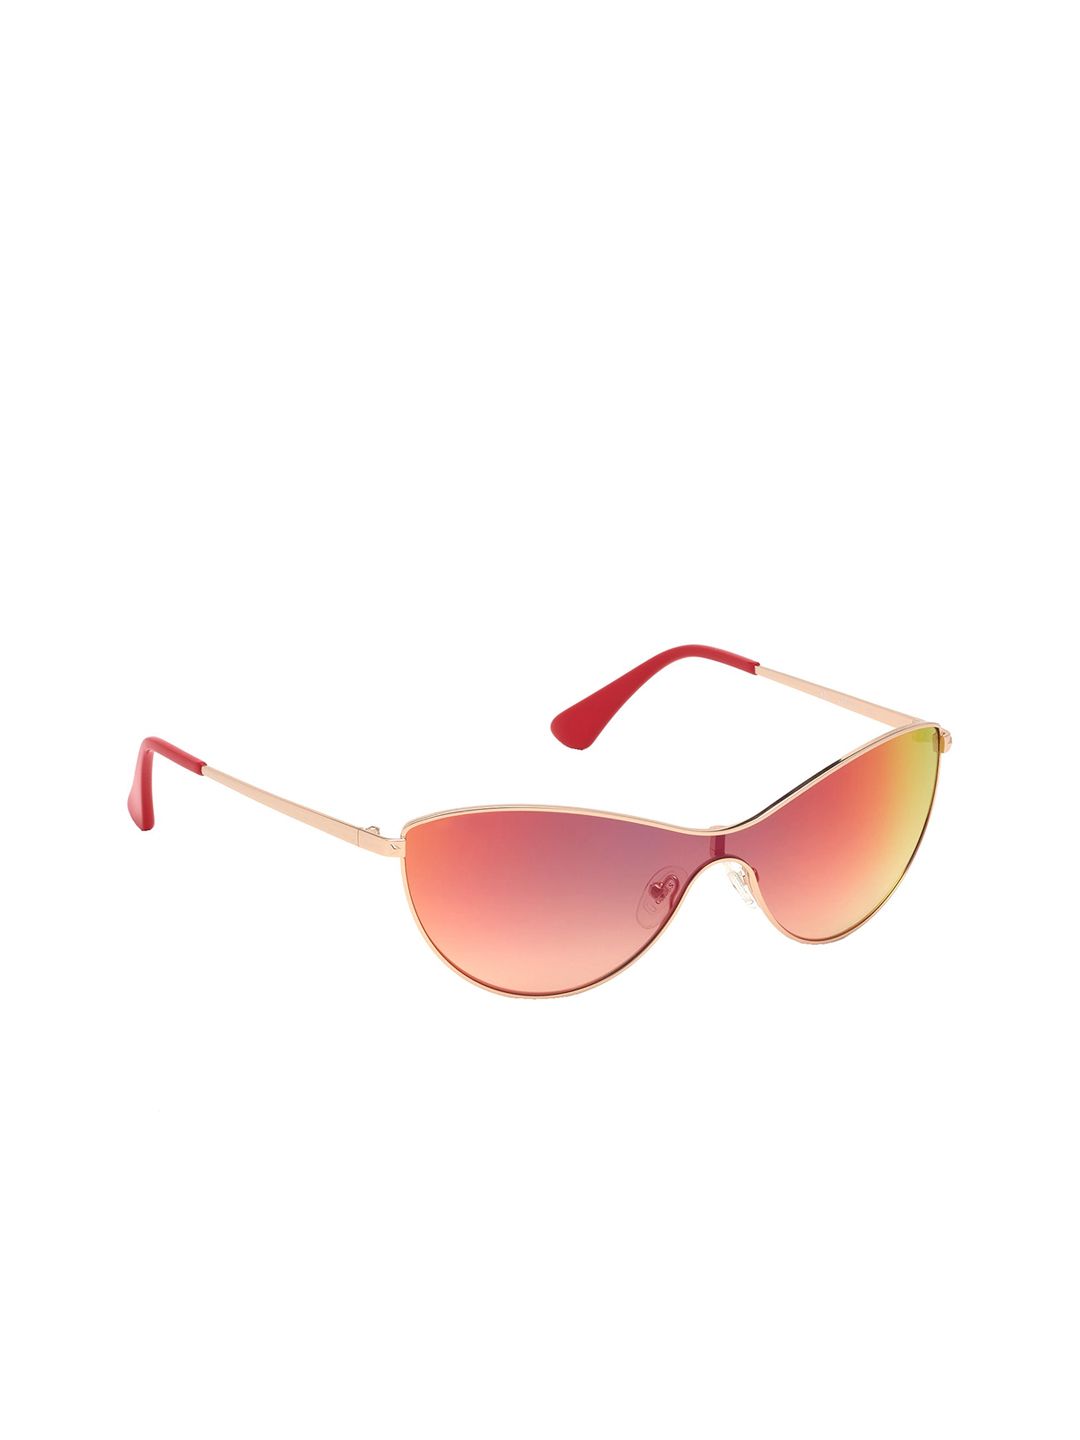 Guess Women Cateye Sunglasses GU7630 00 28U-Multi Price in India